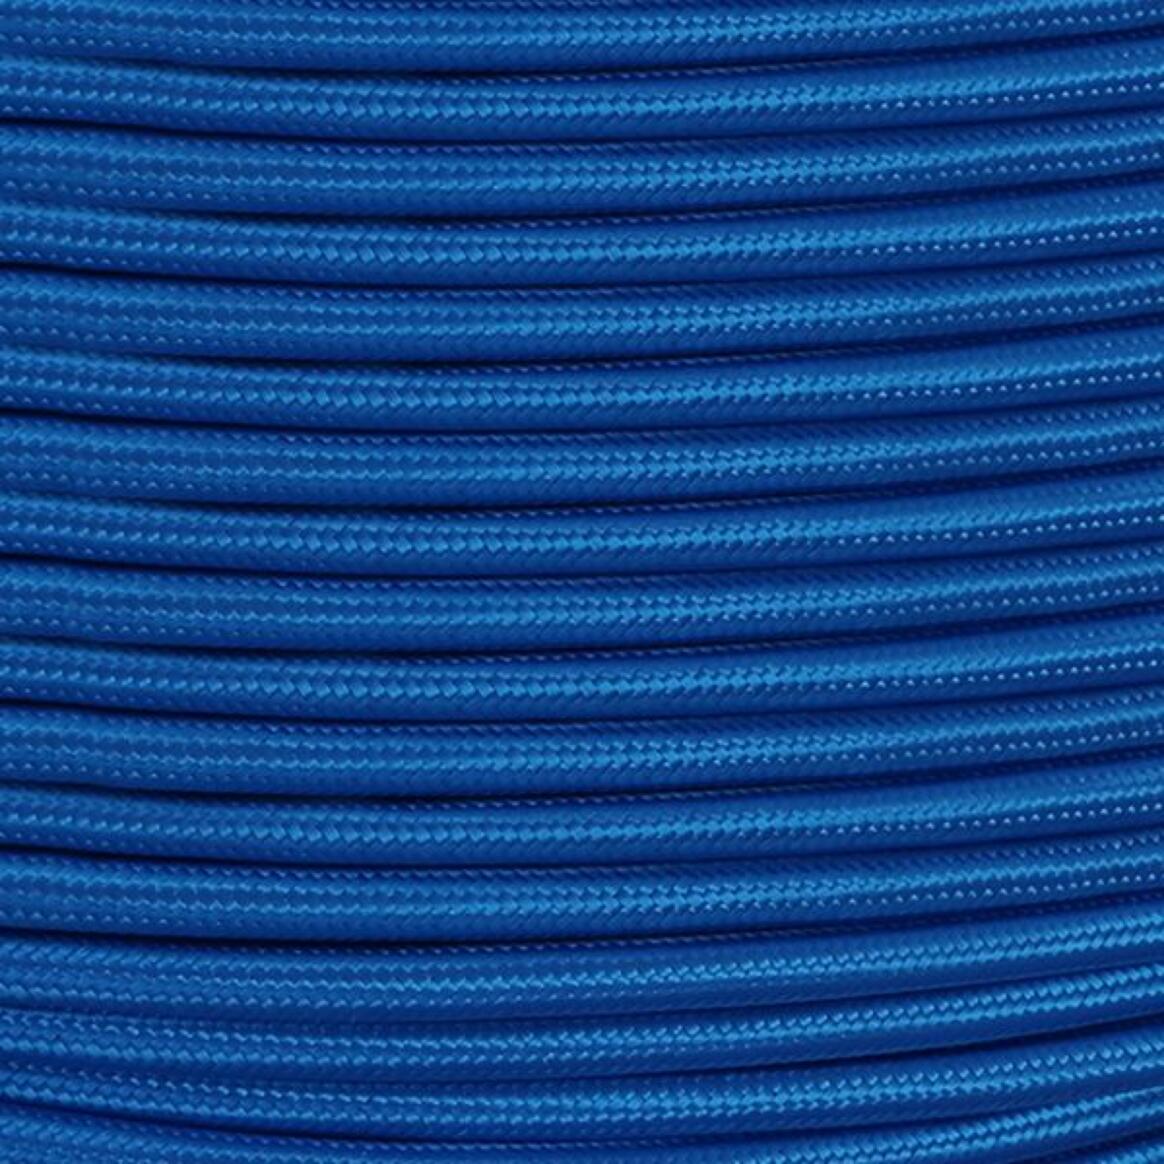 Câble tressé en tissu bleu électrique, 3 fils ronds  main product image